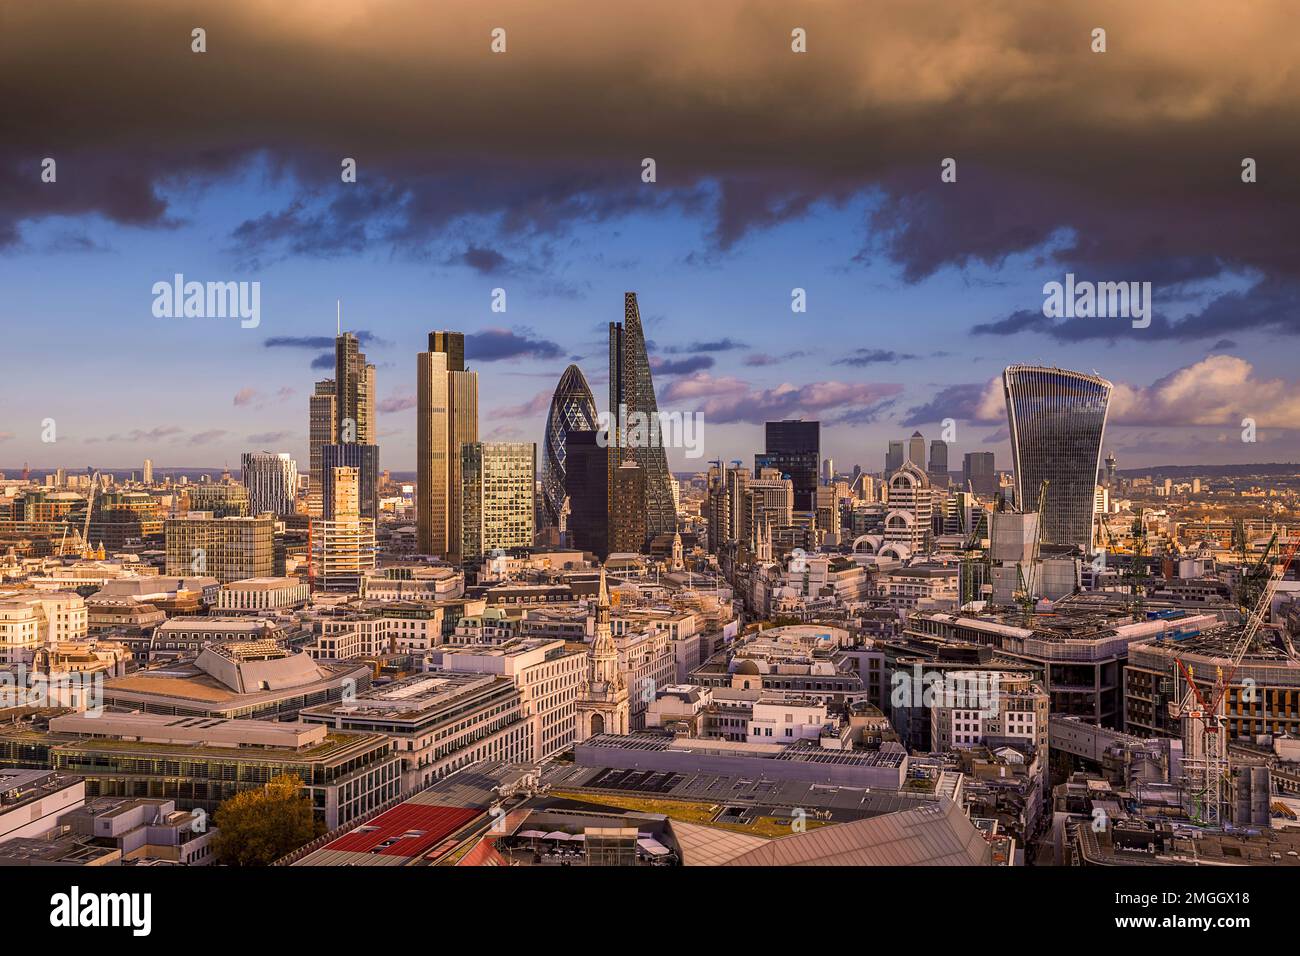 Londra, Regno Unito - la tempesta d'oro nuvola su Bank, il famoso quartiere degli affari di Londra al tramonto con i grattacieli. Skyline panoramico di Londra Foto Stock